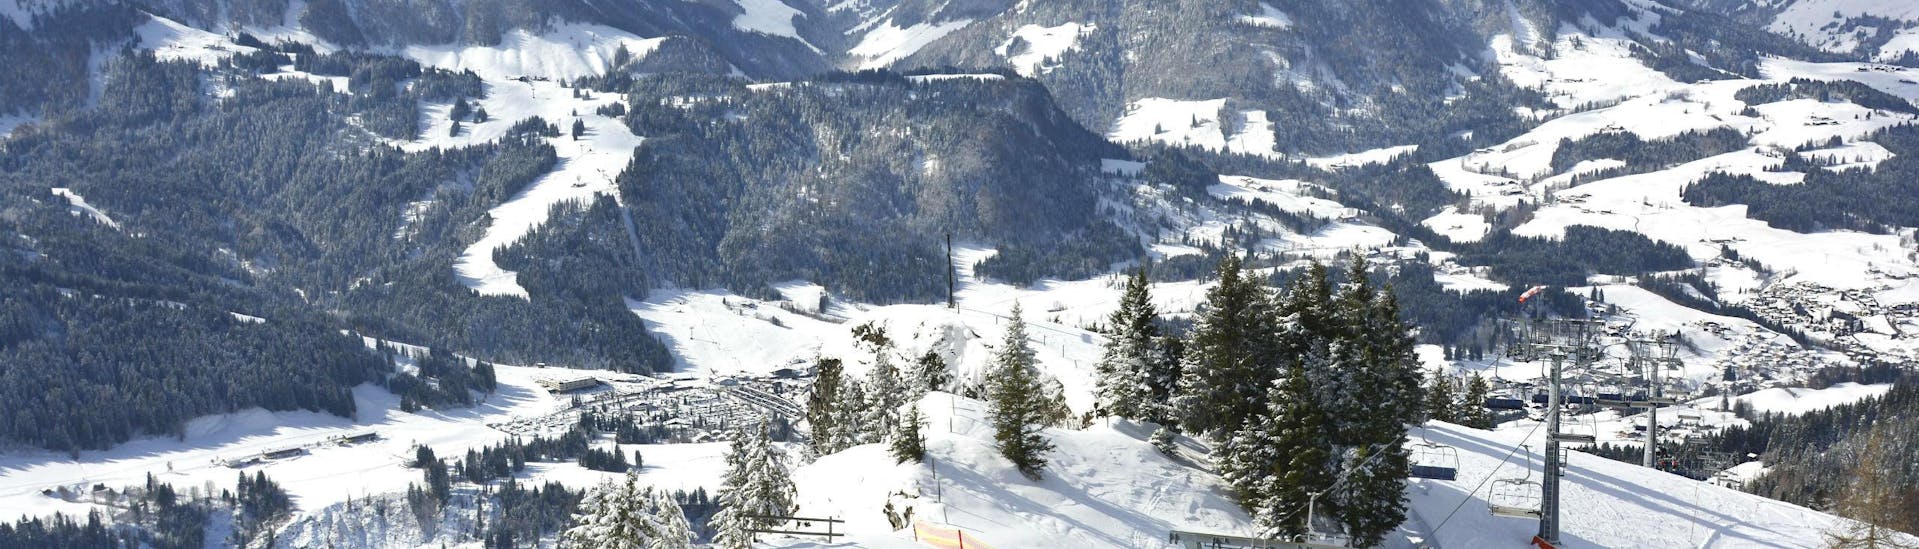 Tijdens een skiles met een skischool in Fieberbrunn heb je een prachtig uitzicht op zonnige bergen.